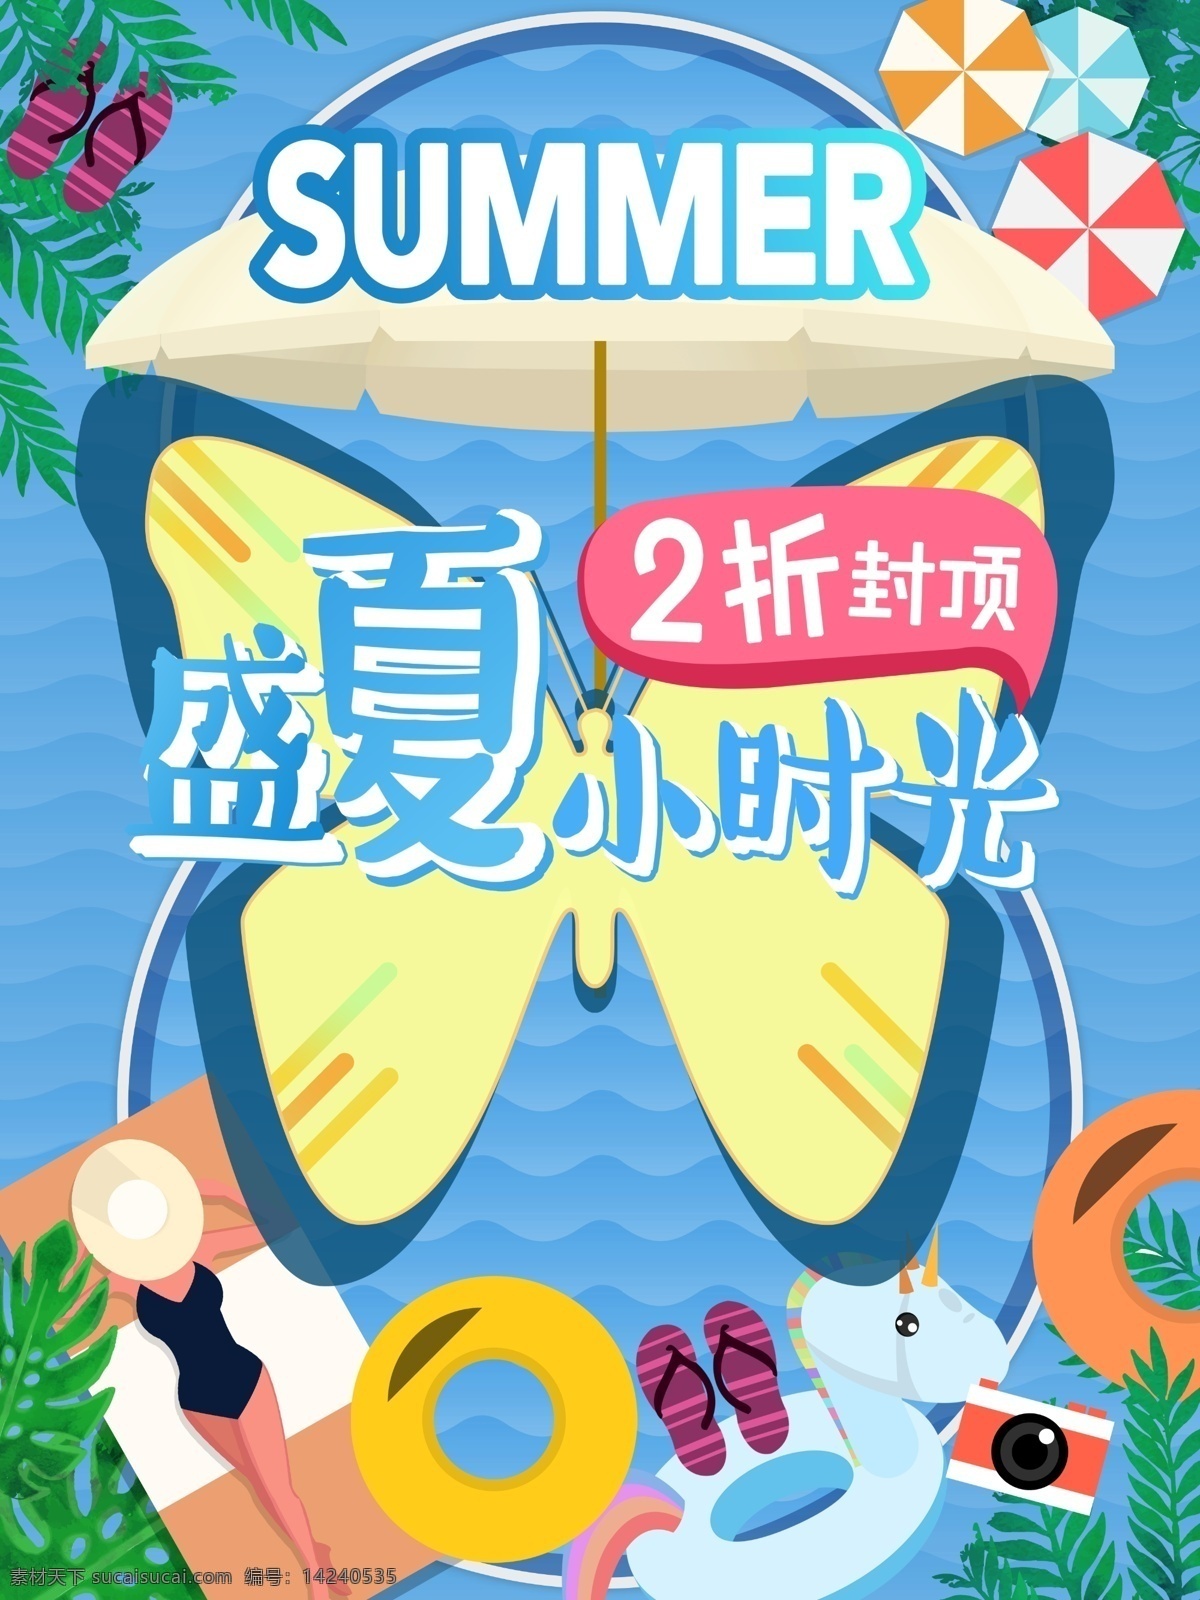 夏日 打折 宣传海报 源文件 促销 化蝶 减价 蓝色 夏季 有趣 装饰图案